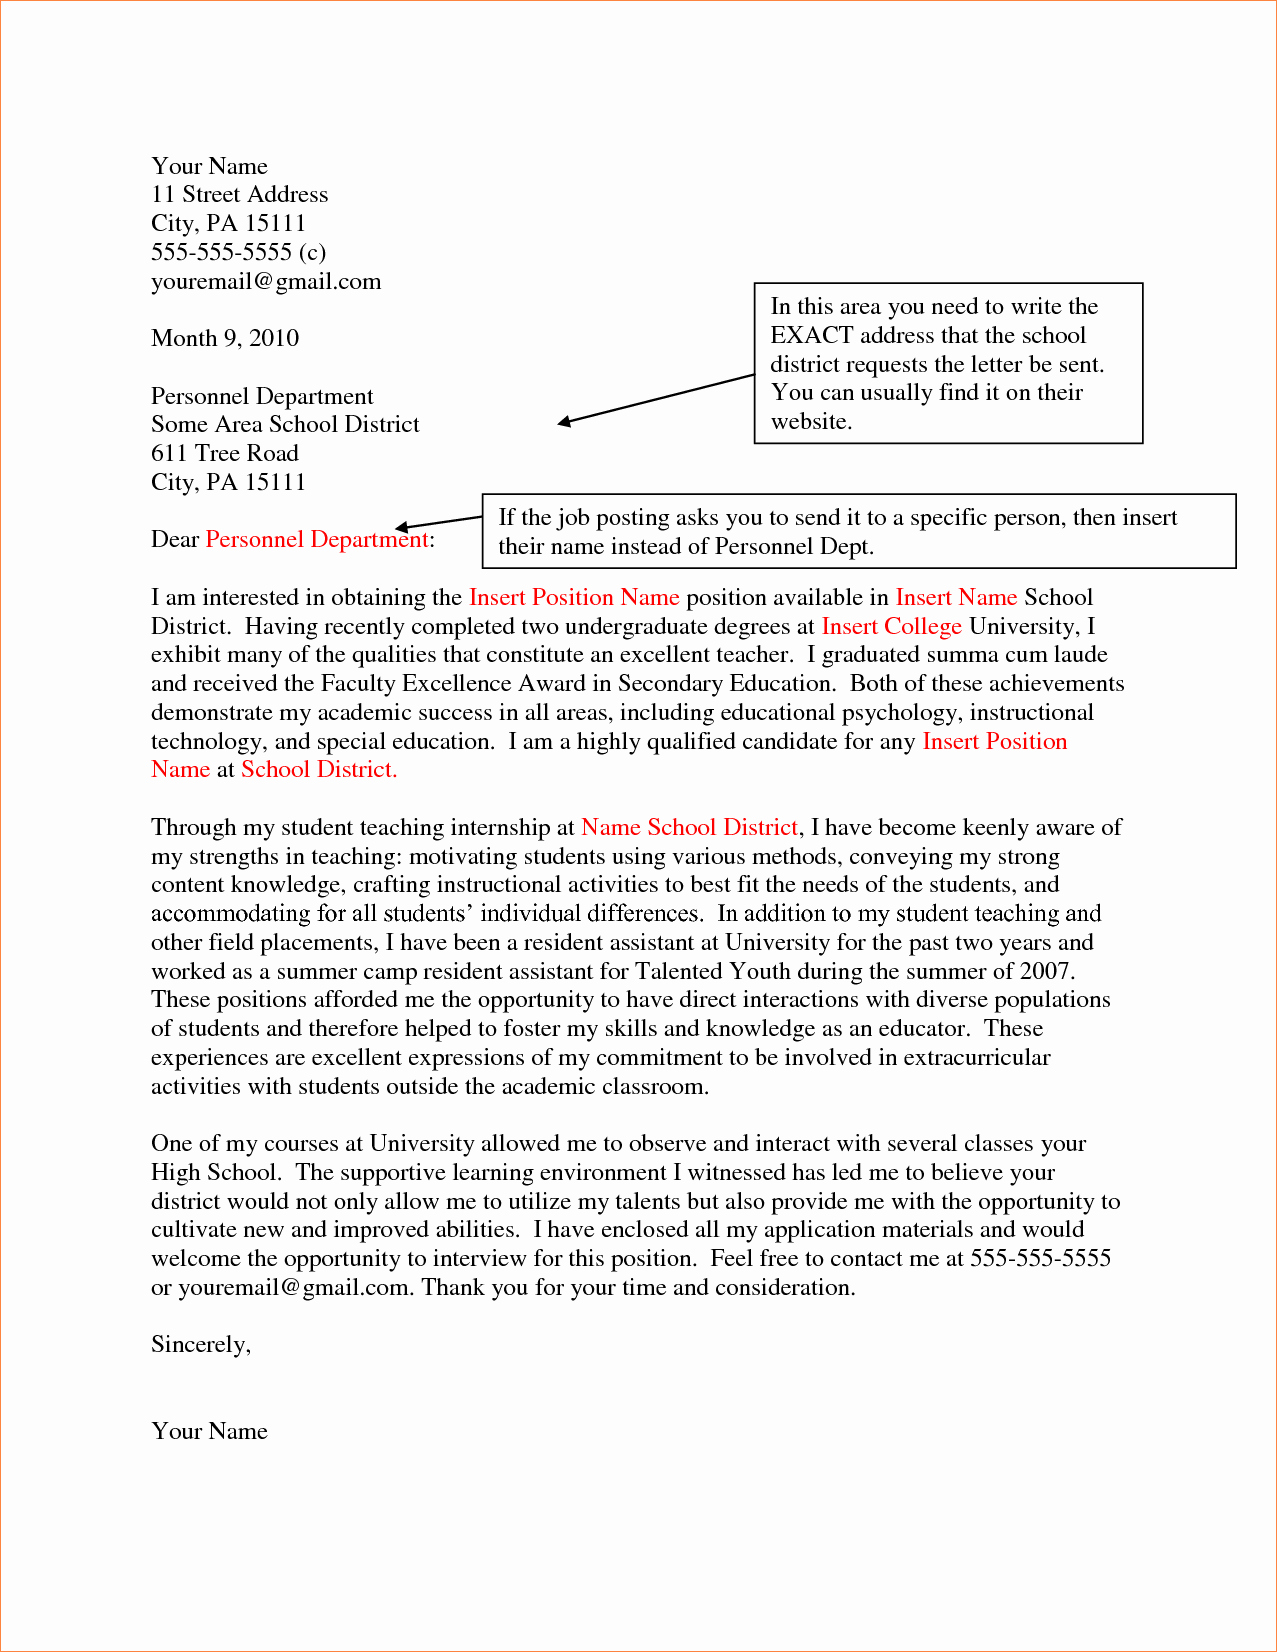 4 Letter Of Interest for Teachingreport Template Document